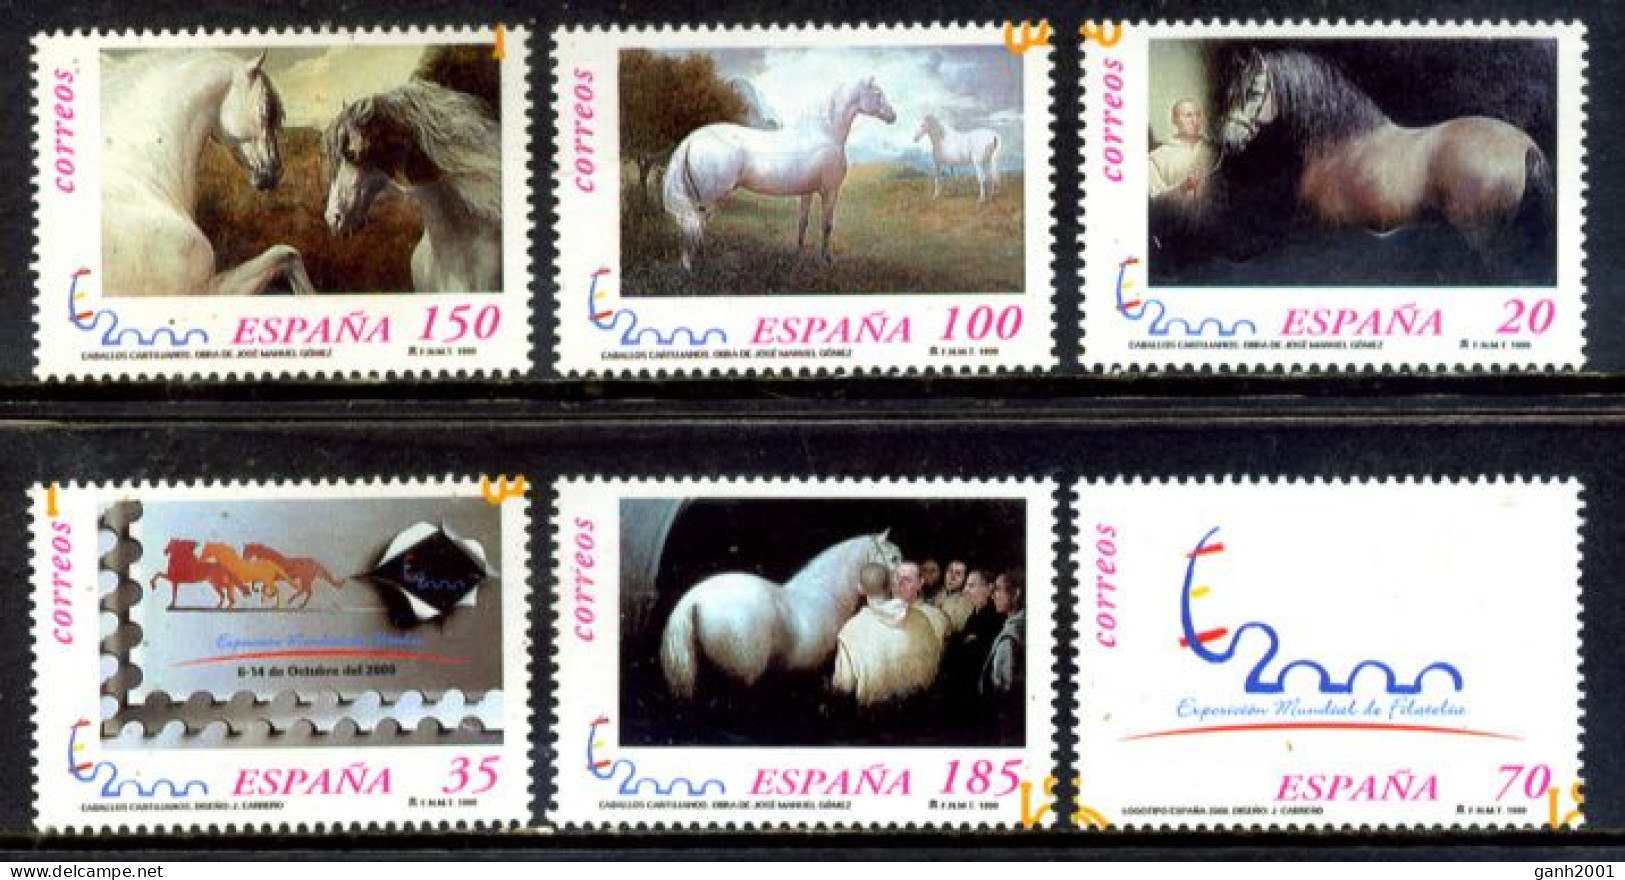 Spain 1999 España / Mammals Horses MNH Caballos Säugetiere Chevaux / Hb19  34-6 - Paarden